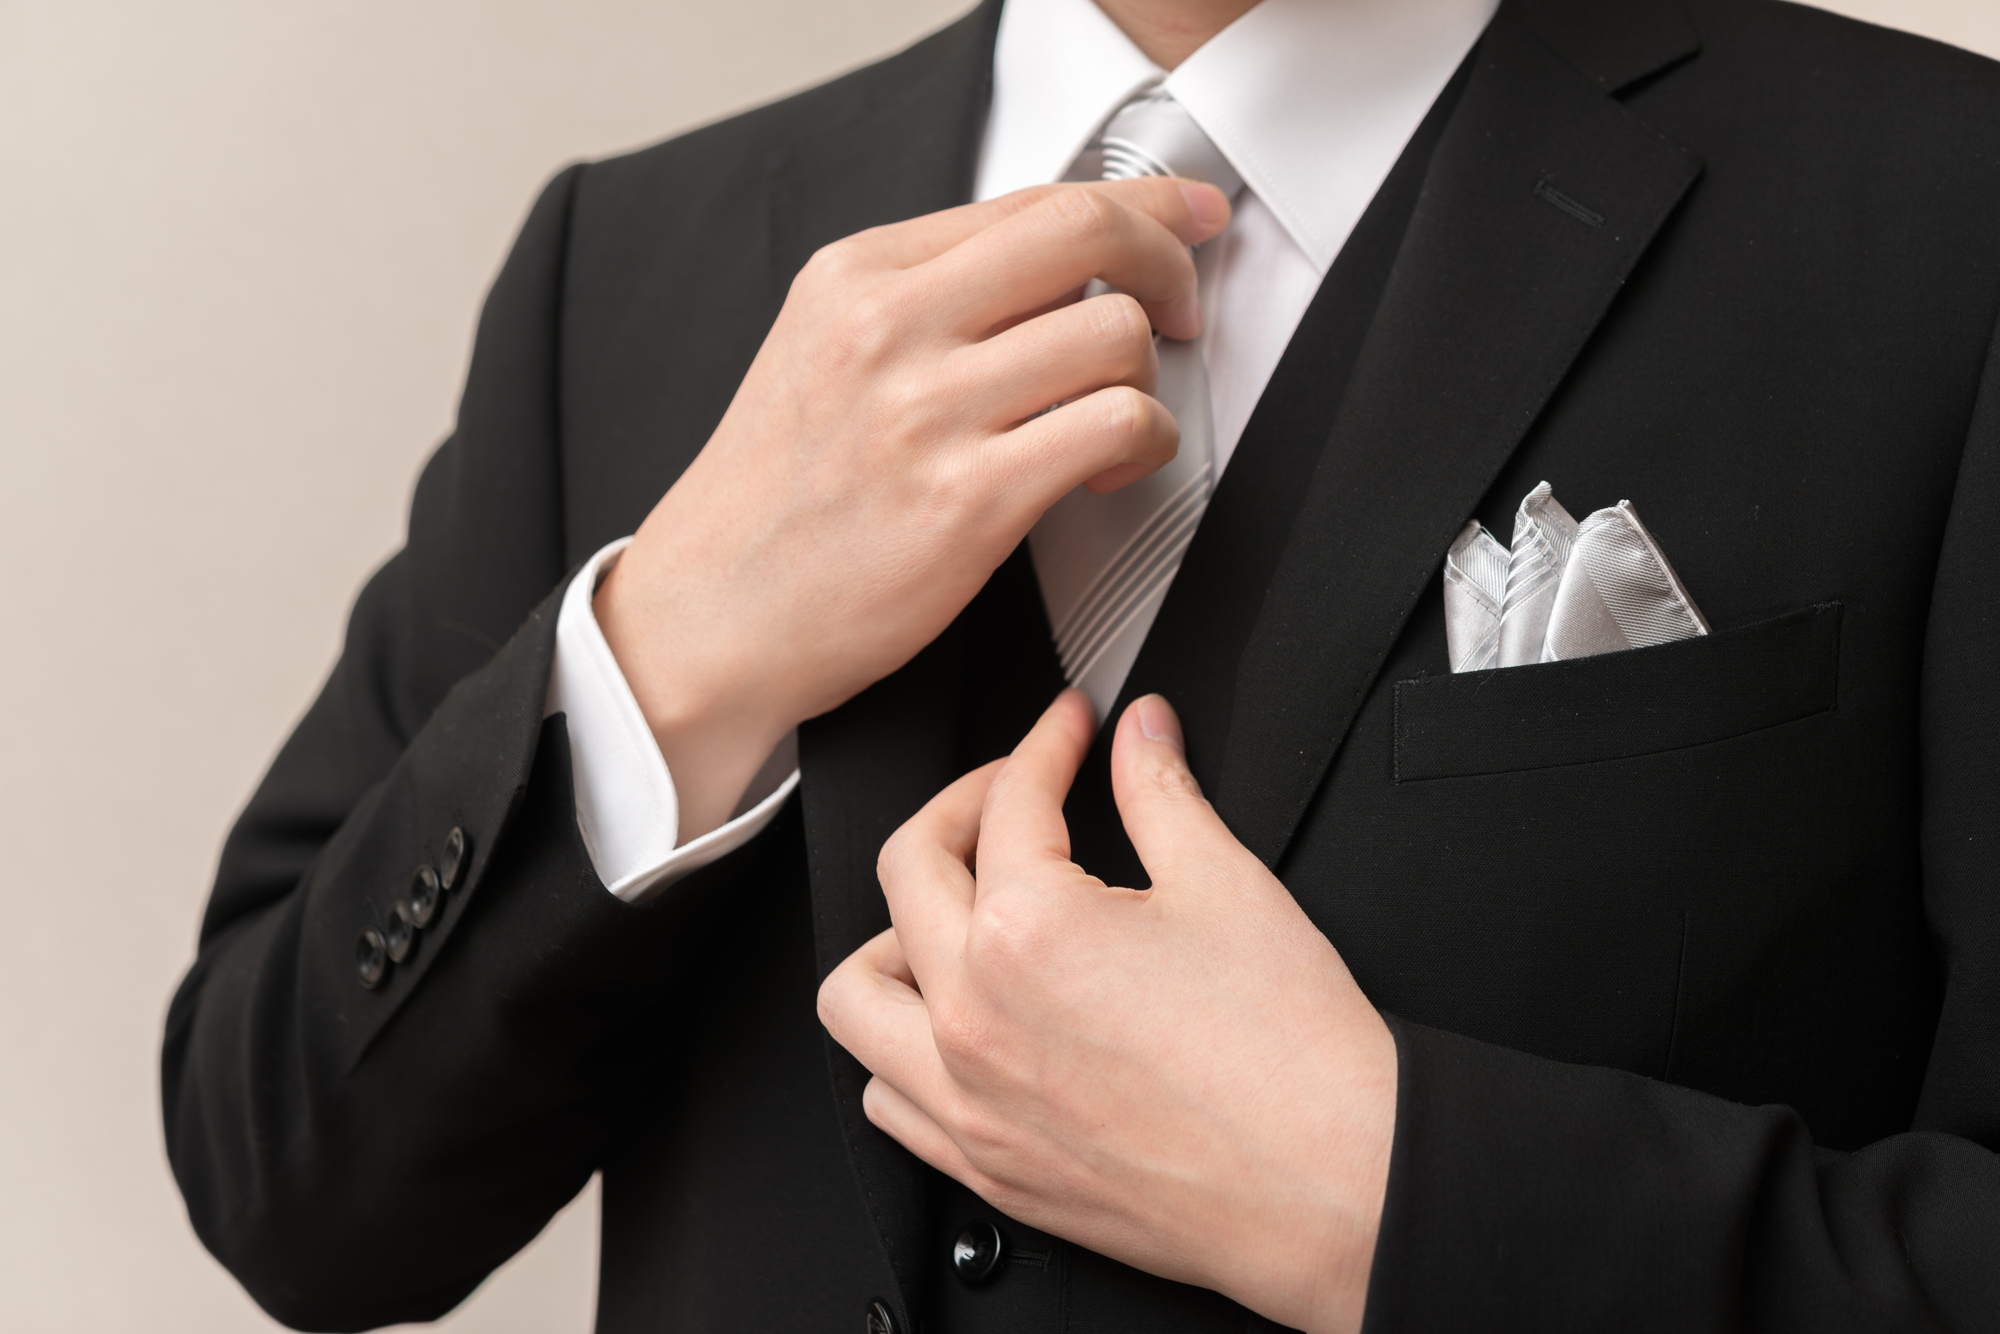 ネクタイを整える礼服を着た男性